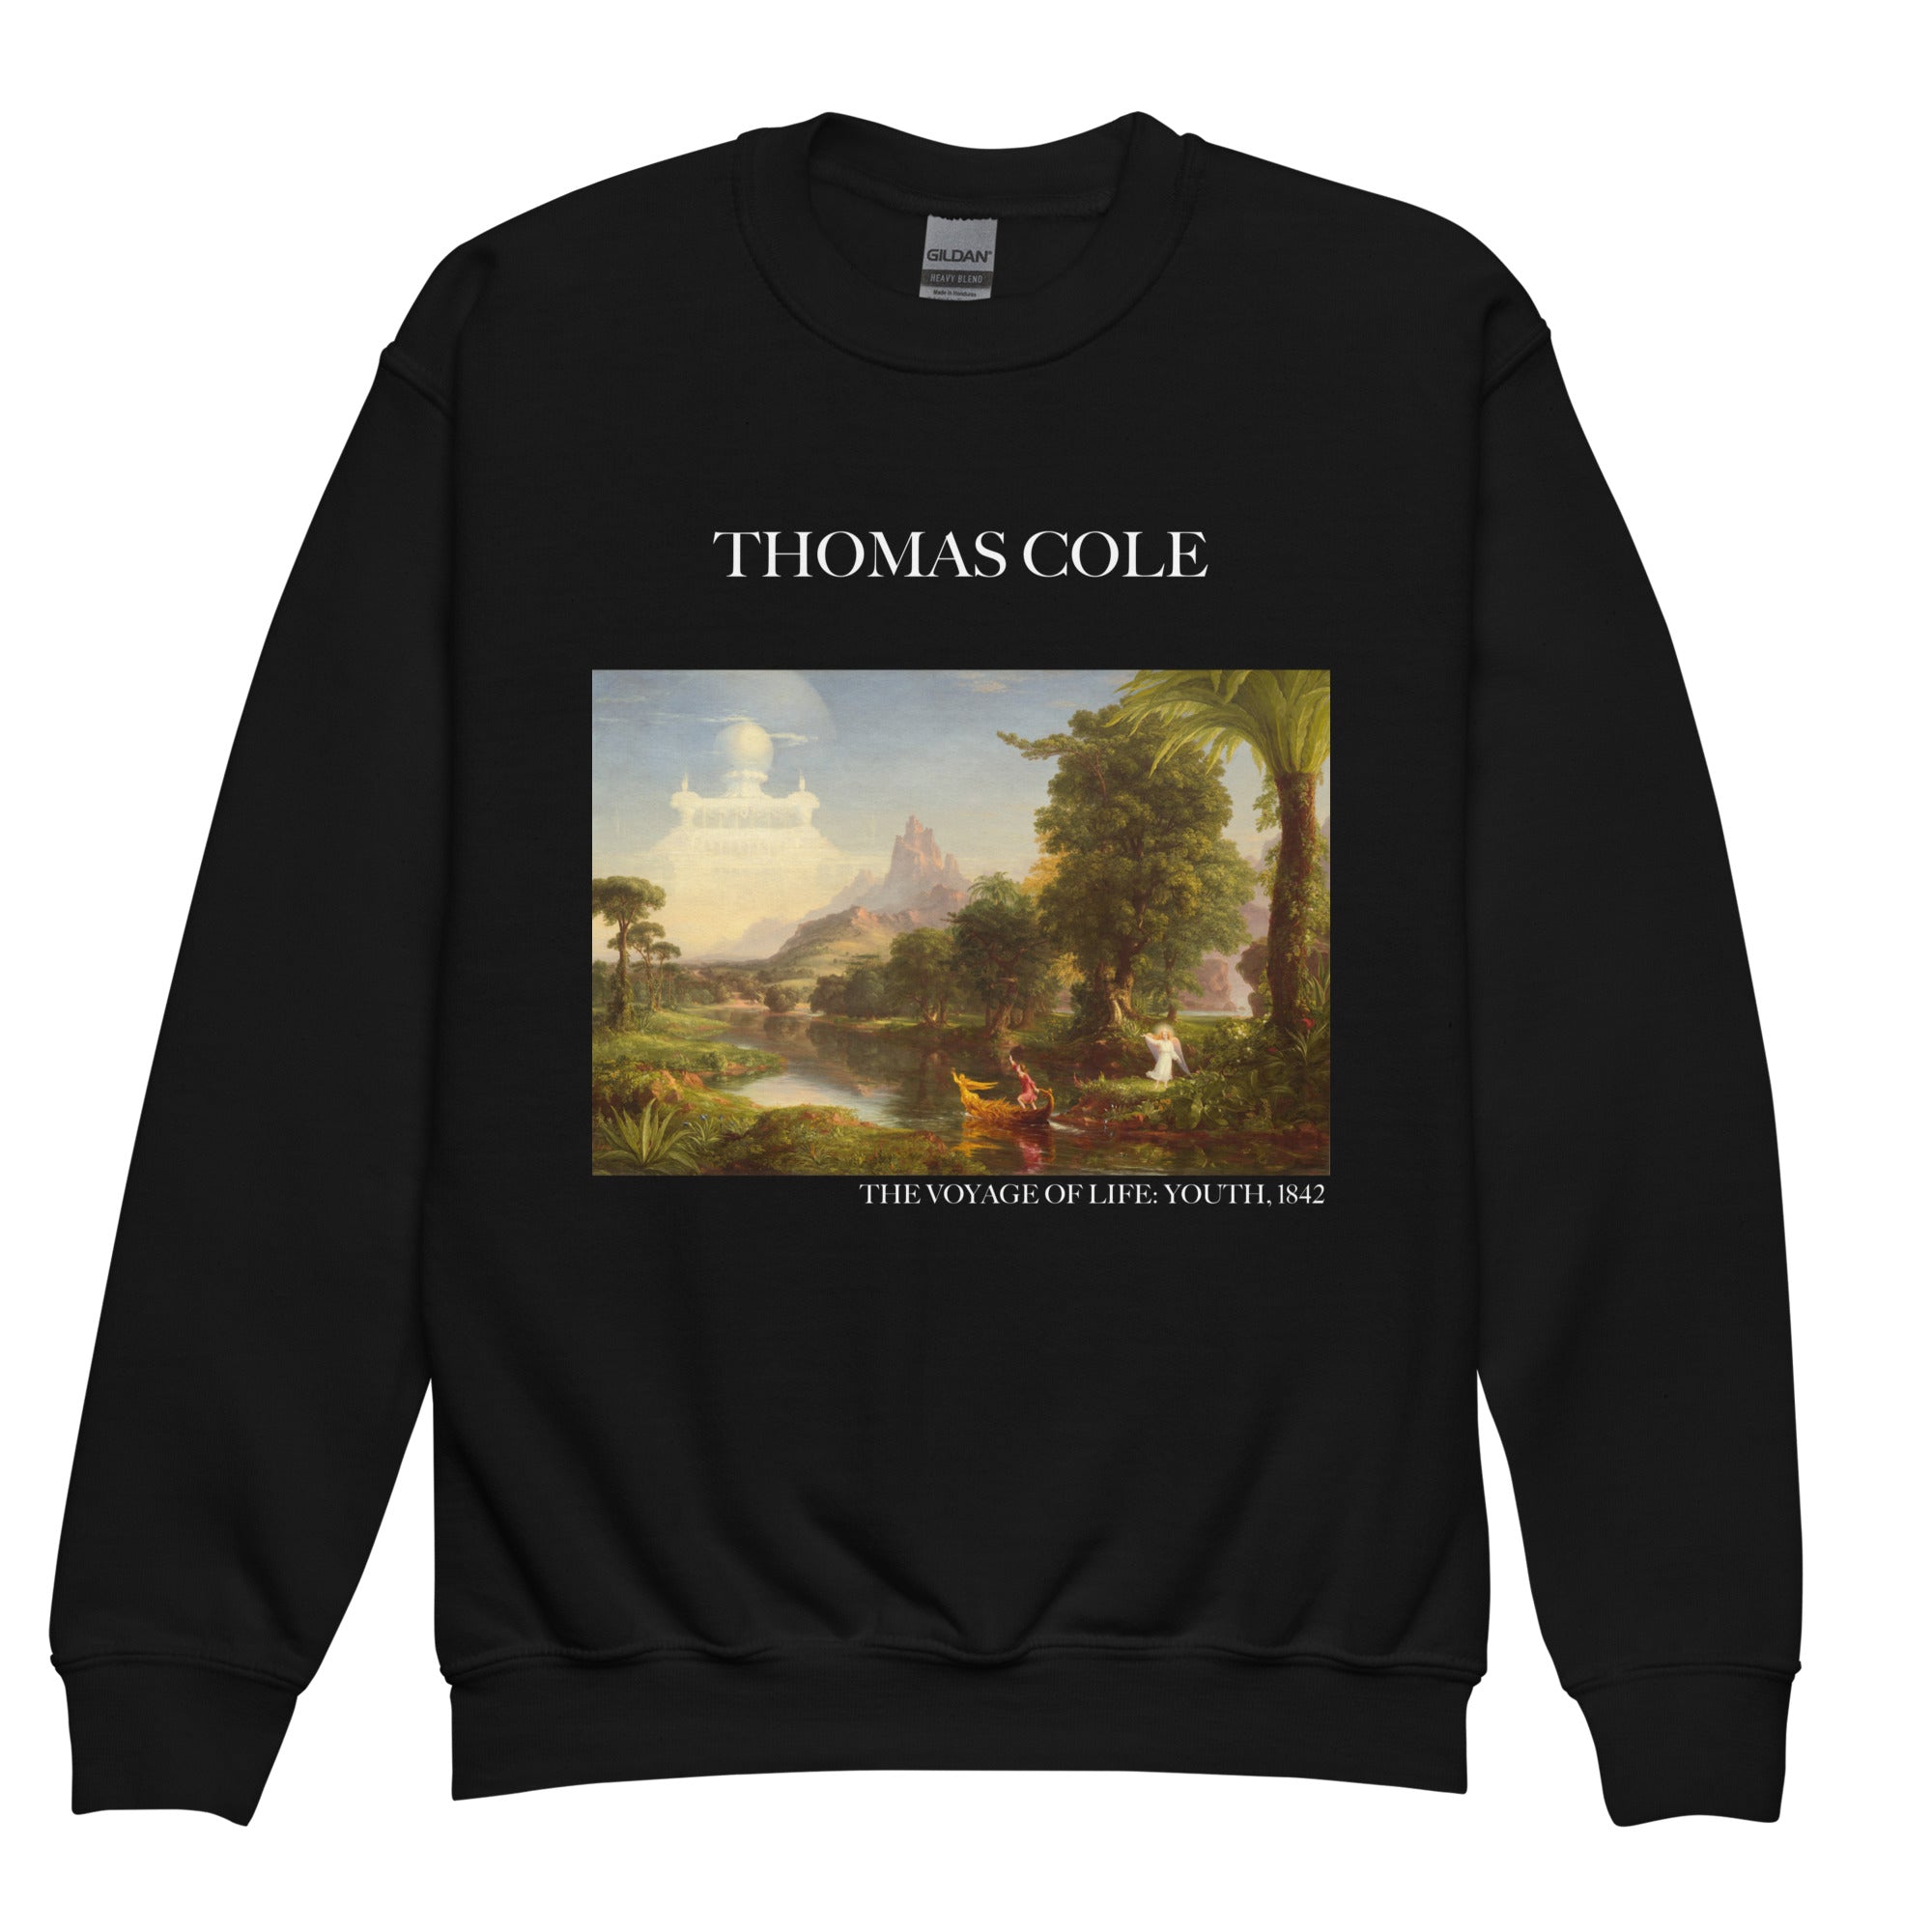 Thomas Cole 'The Voyage of Life: Youth' Famous Painting Crewneck Sweatshirt | Premium Youth Art Sweatshirt